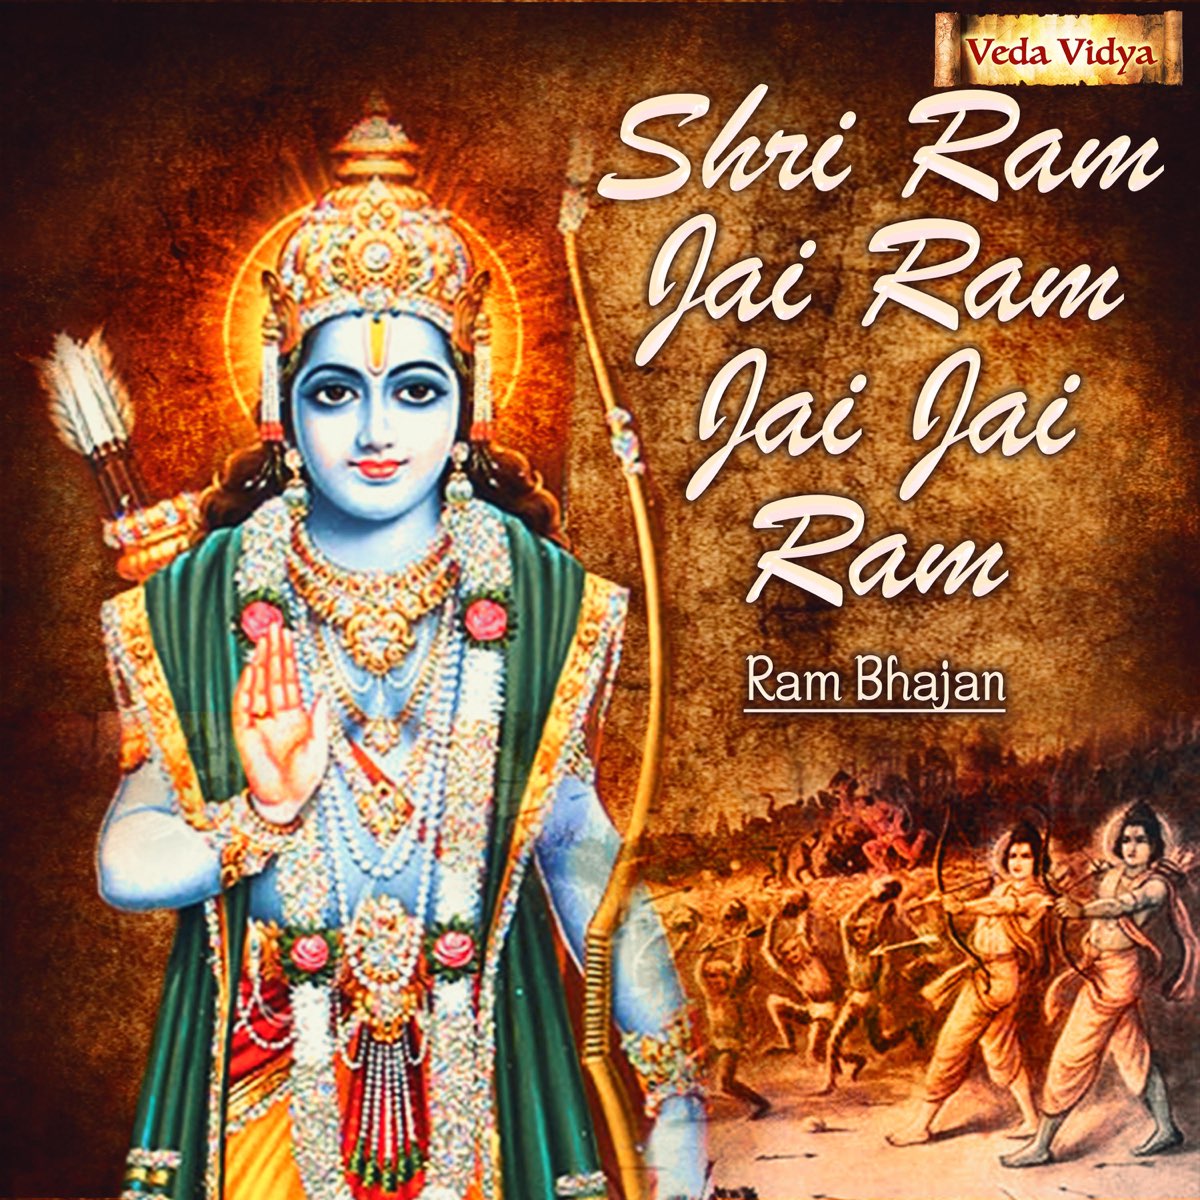 Shri Ram Jai Ram Jai Jai Ram (Ram Bhajan) - Single par Jatin sur Apple Music